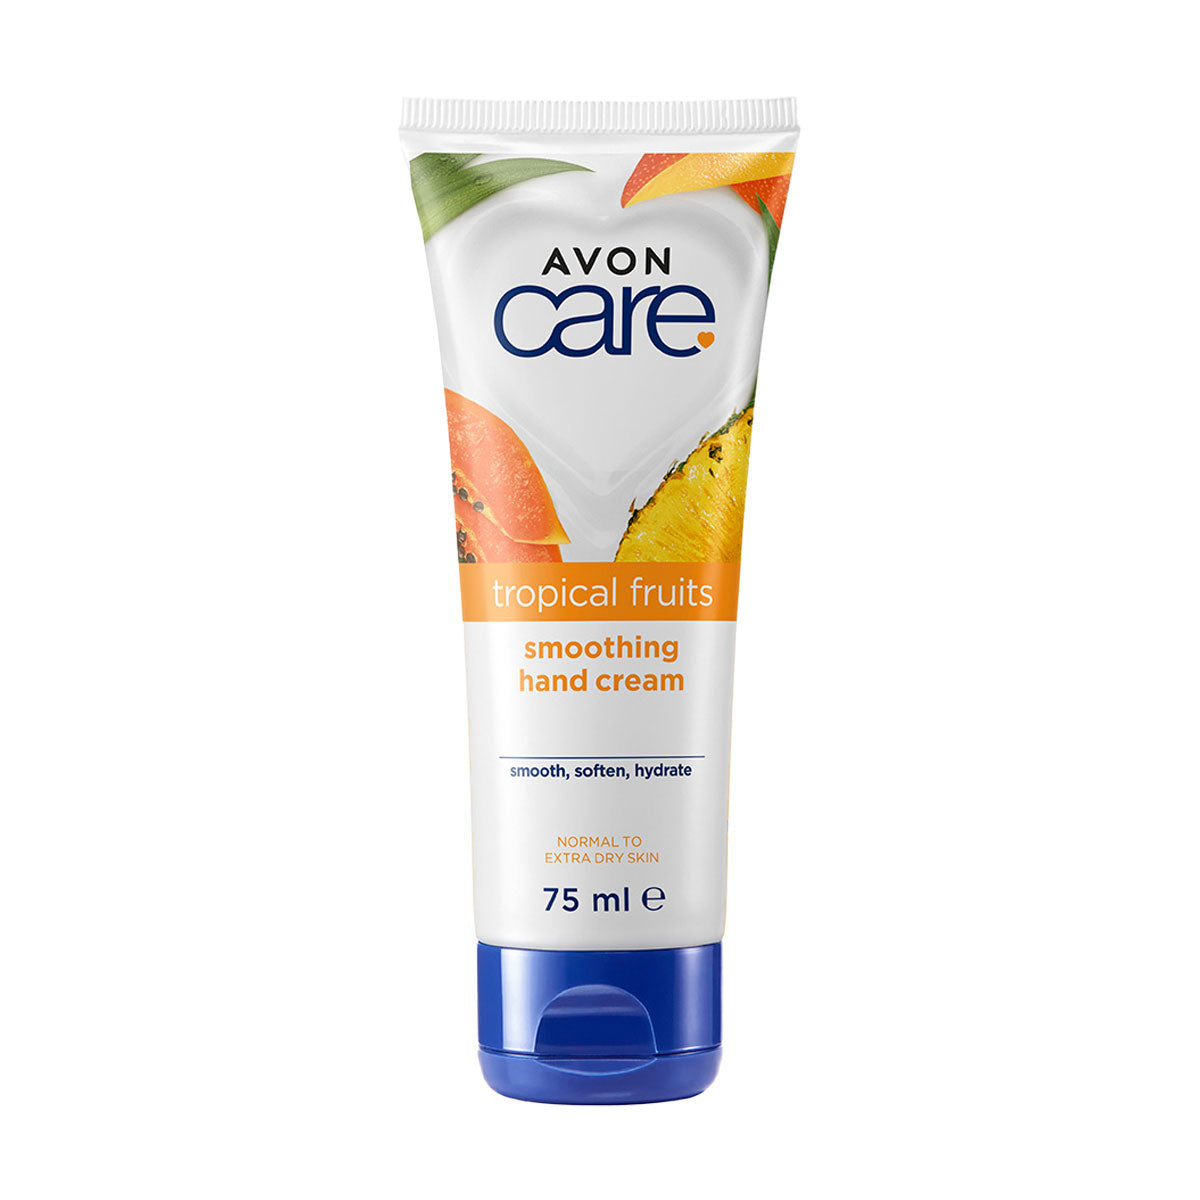 Avon Care Tropical Fruits Hand Cream